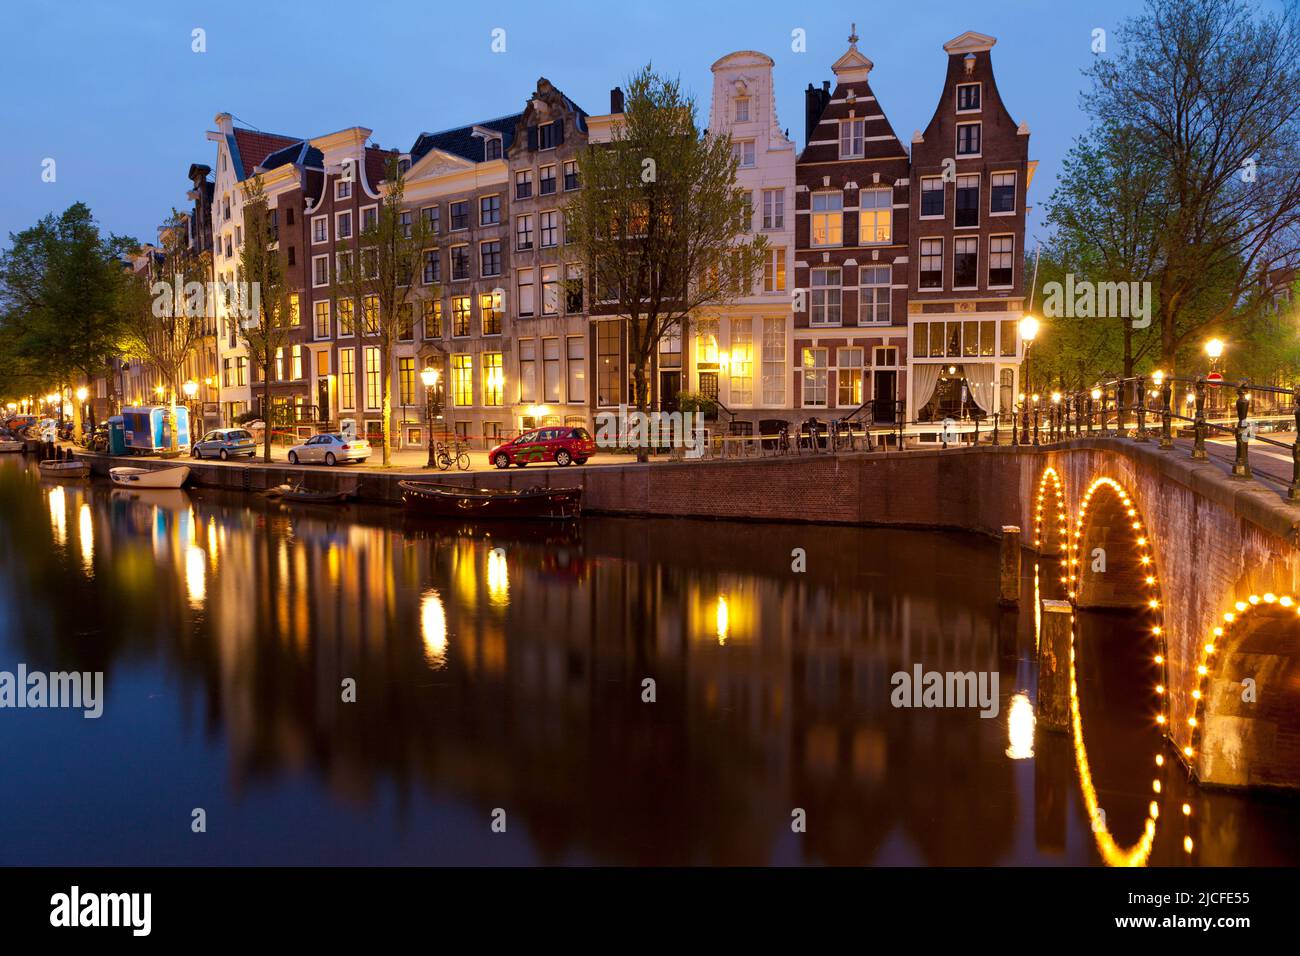 Edifici storici e ponti lungo il canale Keizersgracht al tramonto, Amsterdam, Olanda del Nord, Paesi Bassi Foto Stock